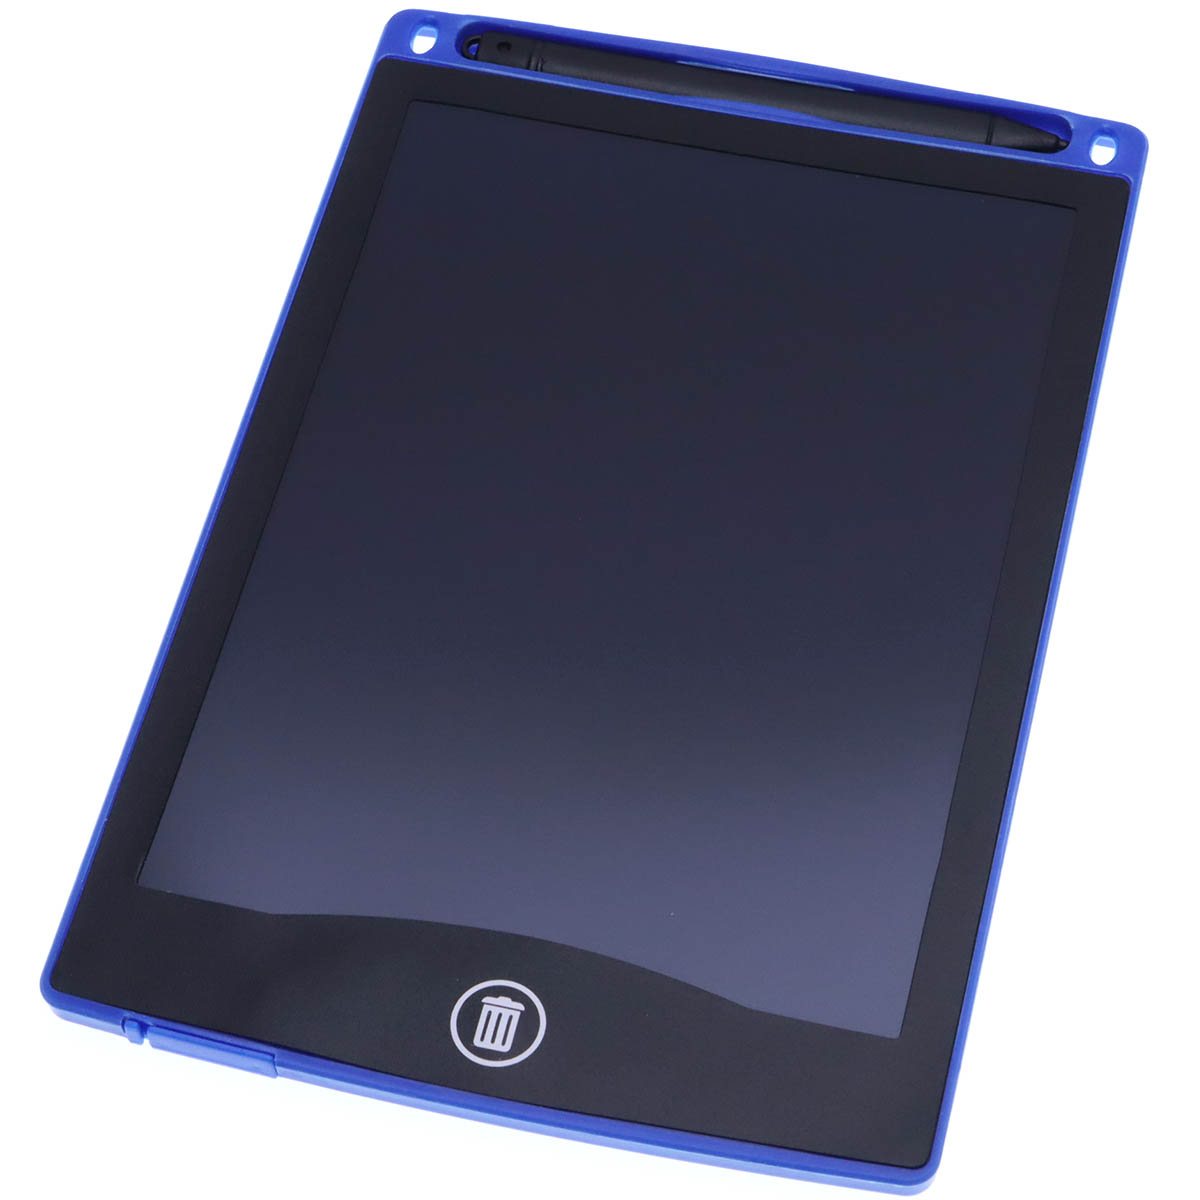 Графический планшет BAIBIAN с сенсорным дисплеем для рисования, 8.5 дюймов, цвет синий